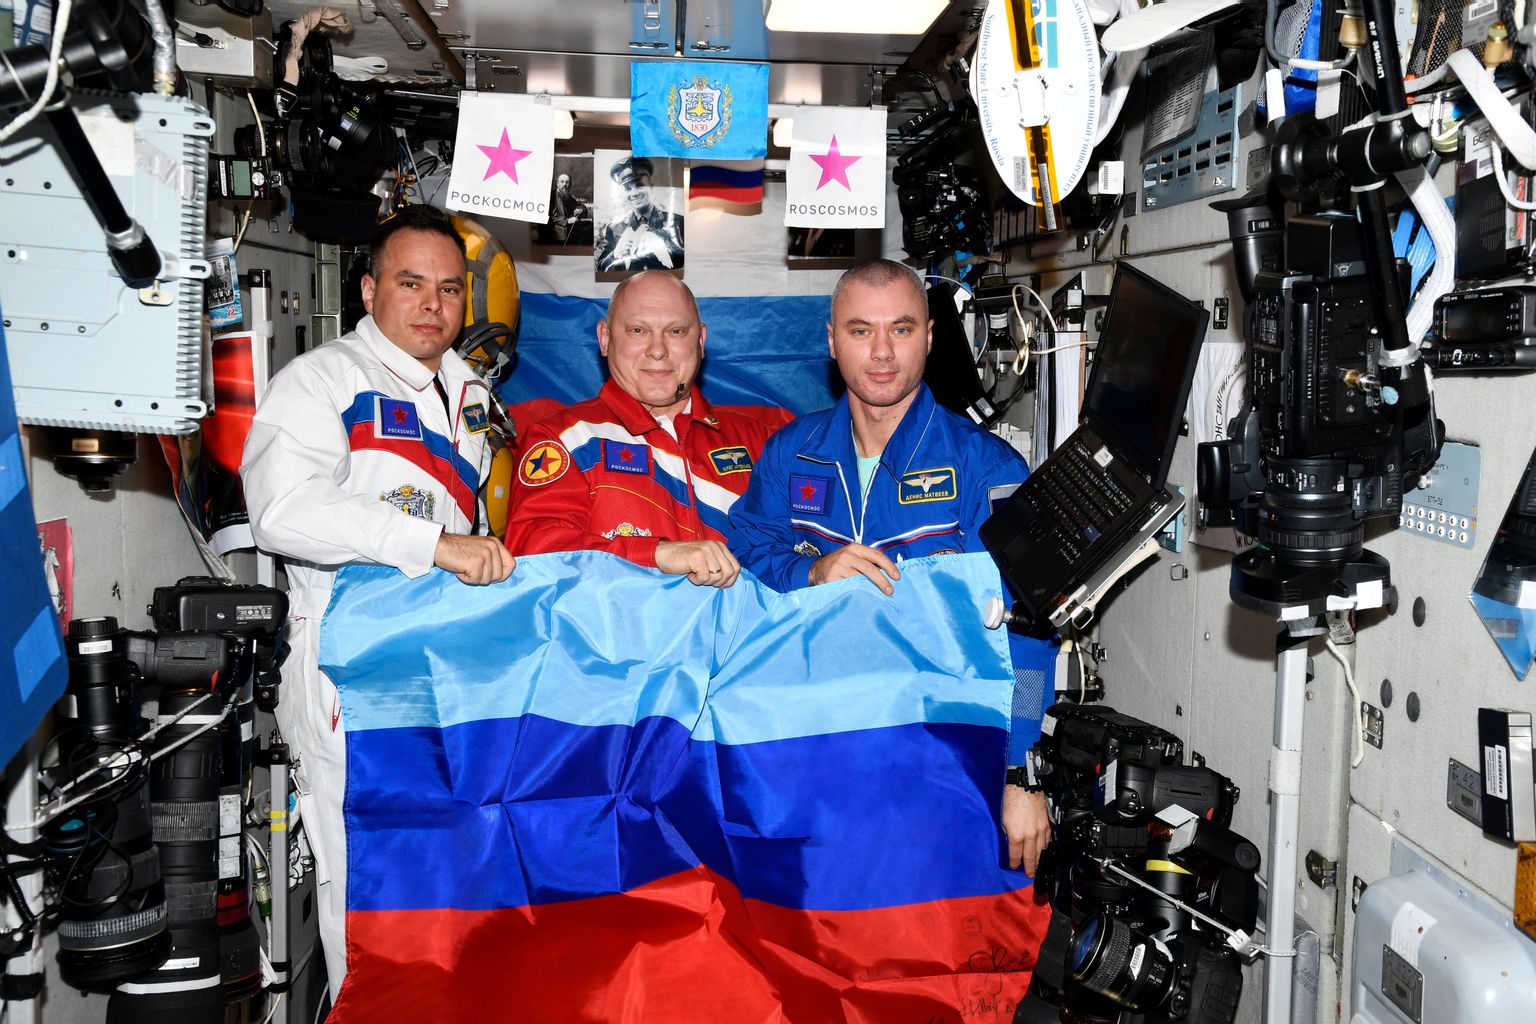 Krievijas kosmonauti ar "Luhanskas tautas republikas" karogu.